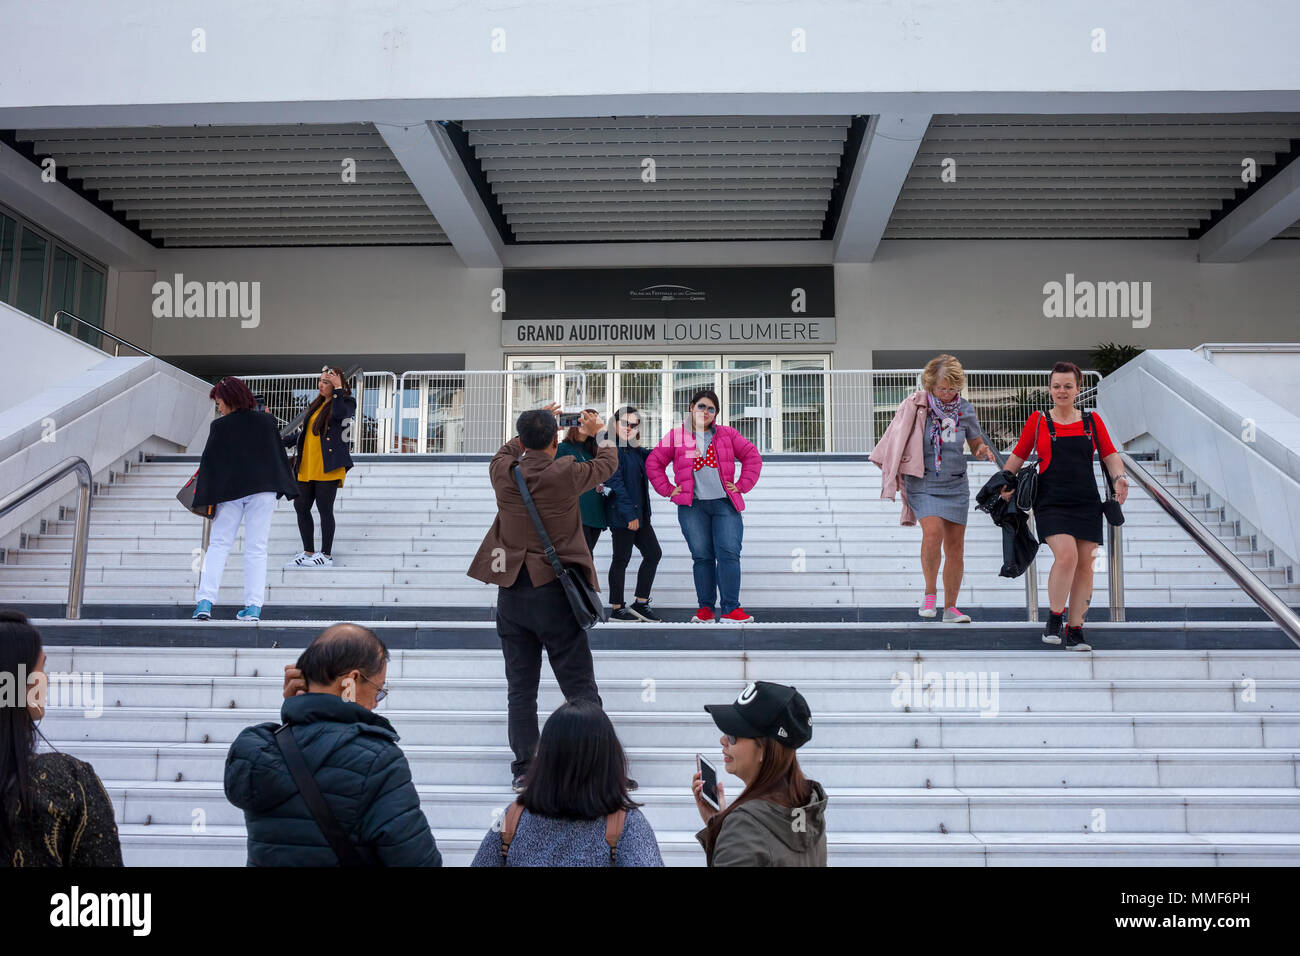 Francia, Cannes, la gente, los turistas posando y tomando fotos en las escaleras del Gran Auditorio Louis Lumière del Festival de Cine de Cannes Foto de stock